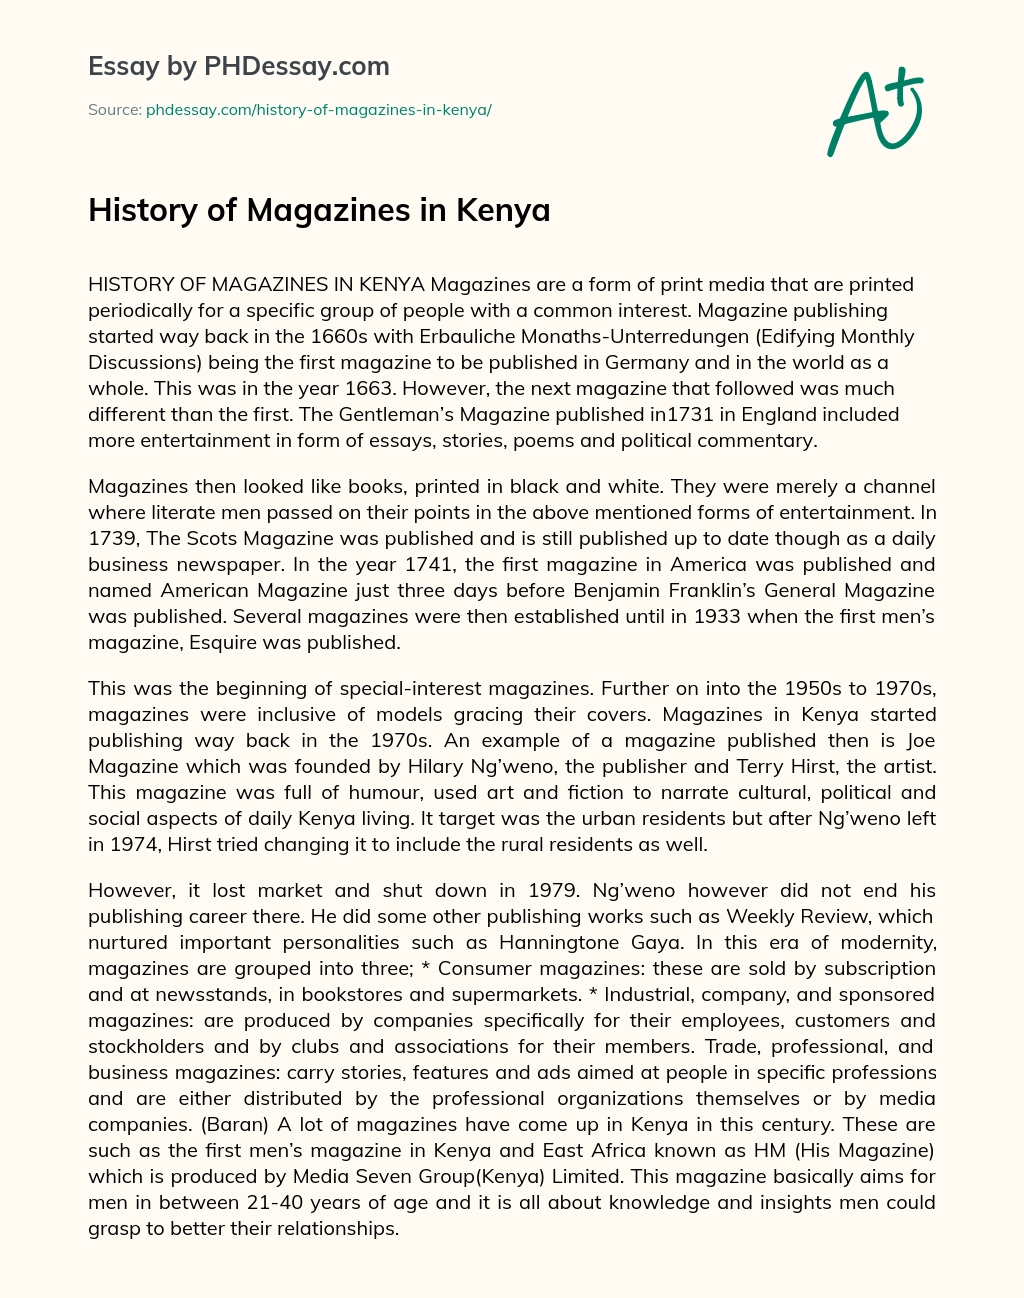 History of Magazines in Kenya essay